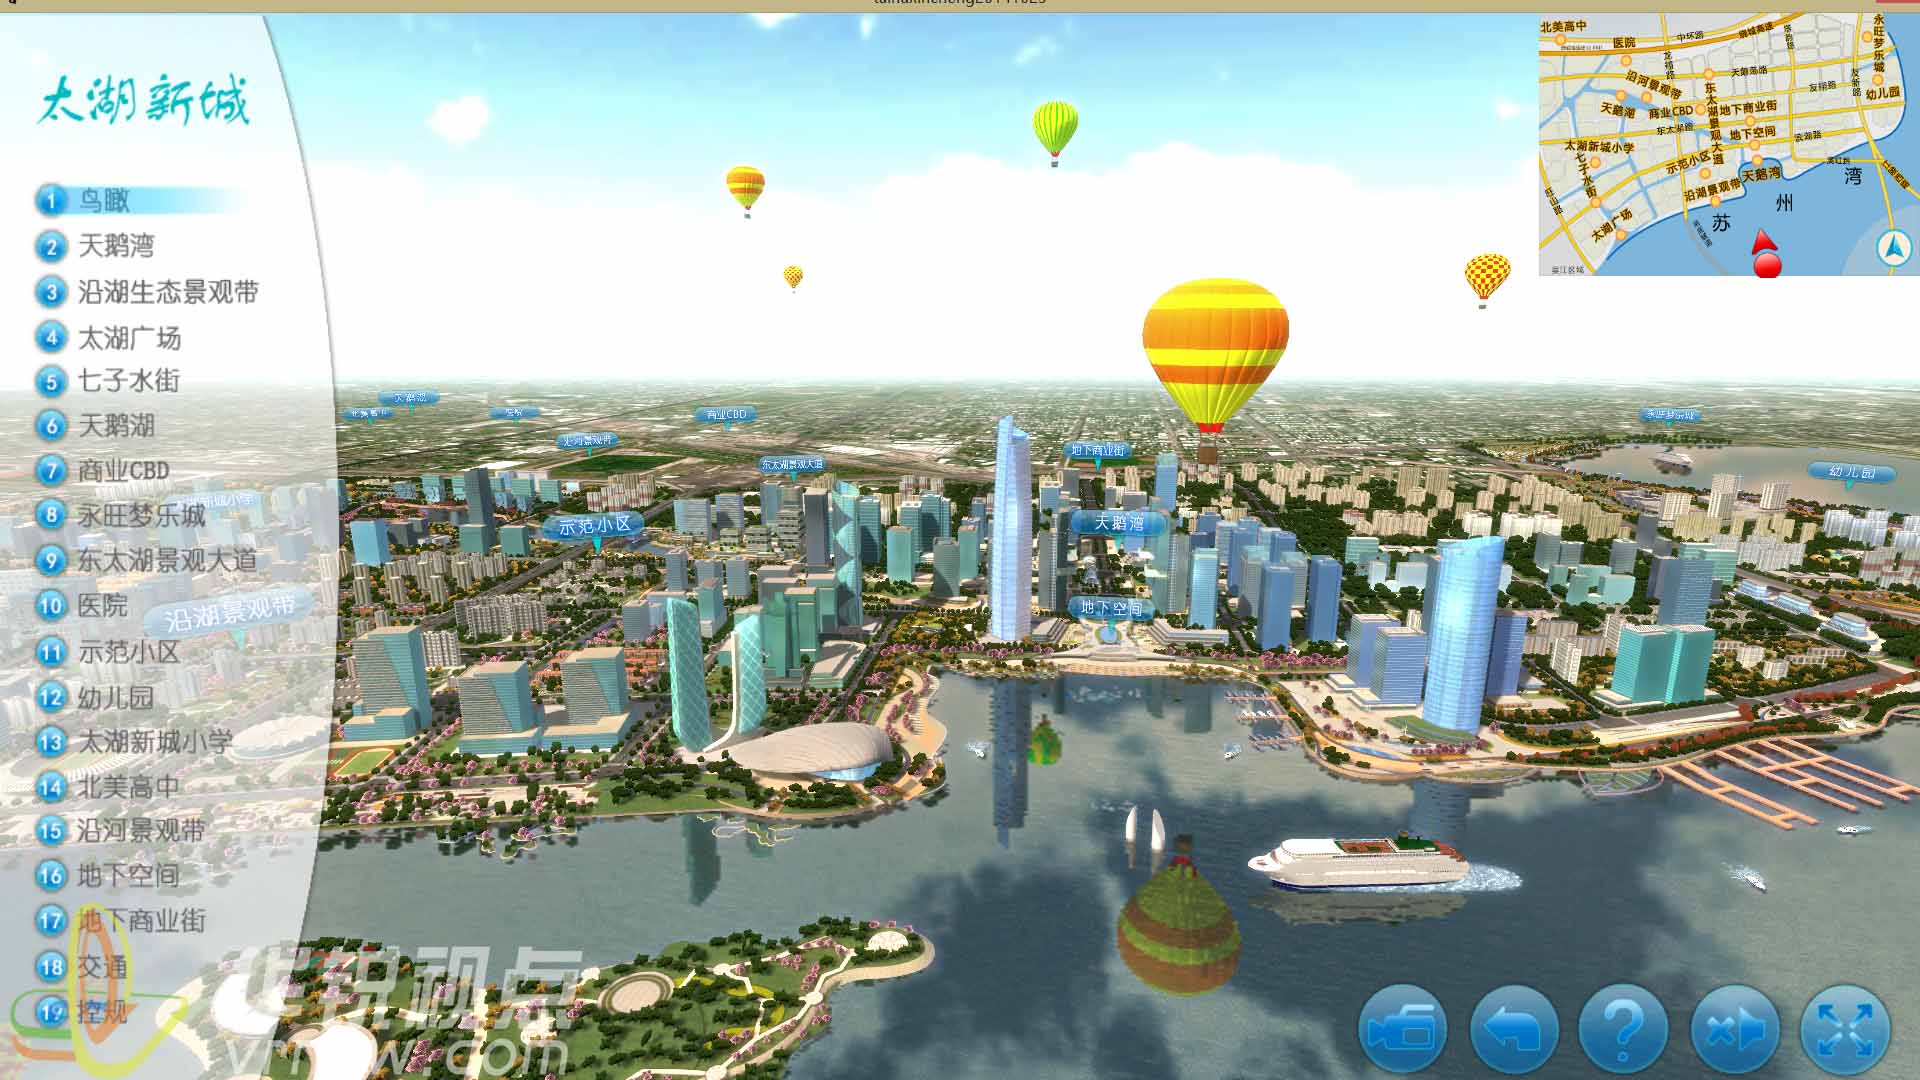 VR智慧城市展示系统